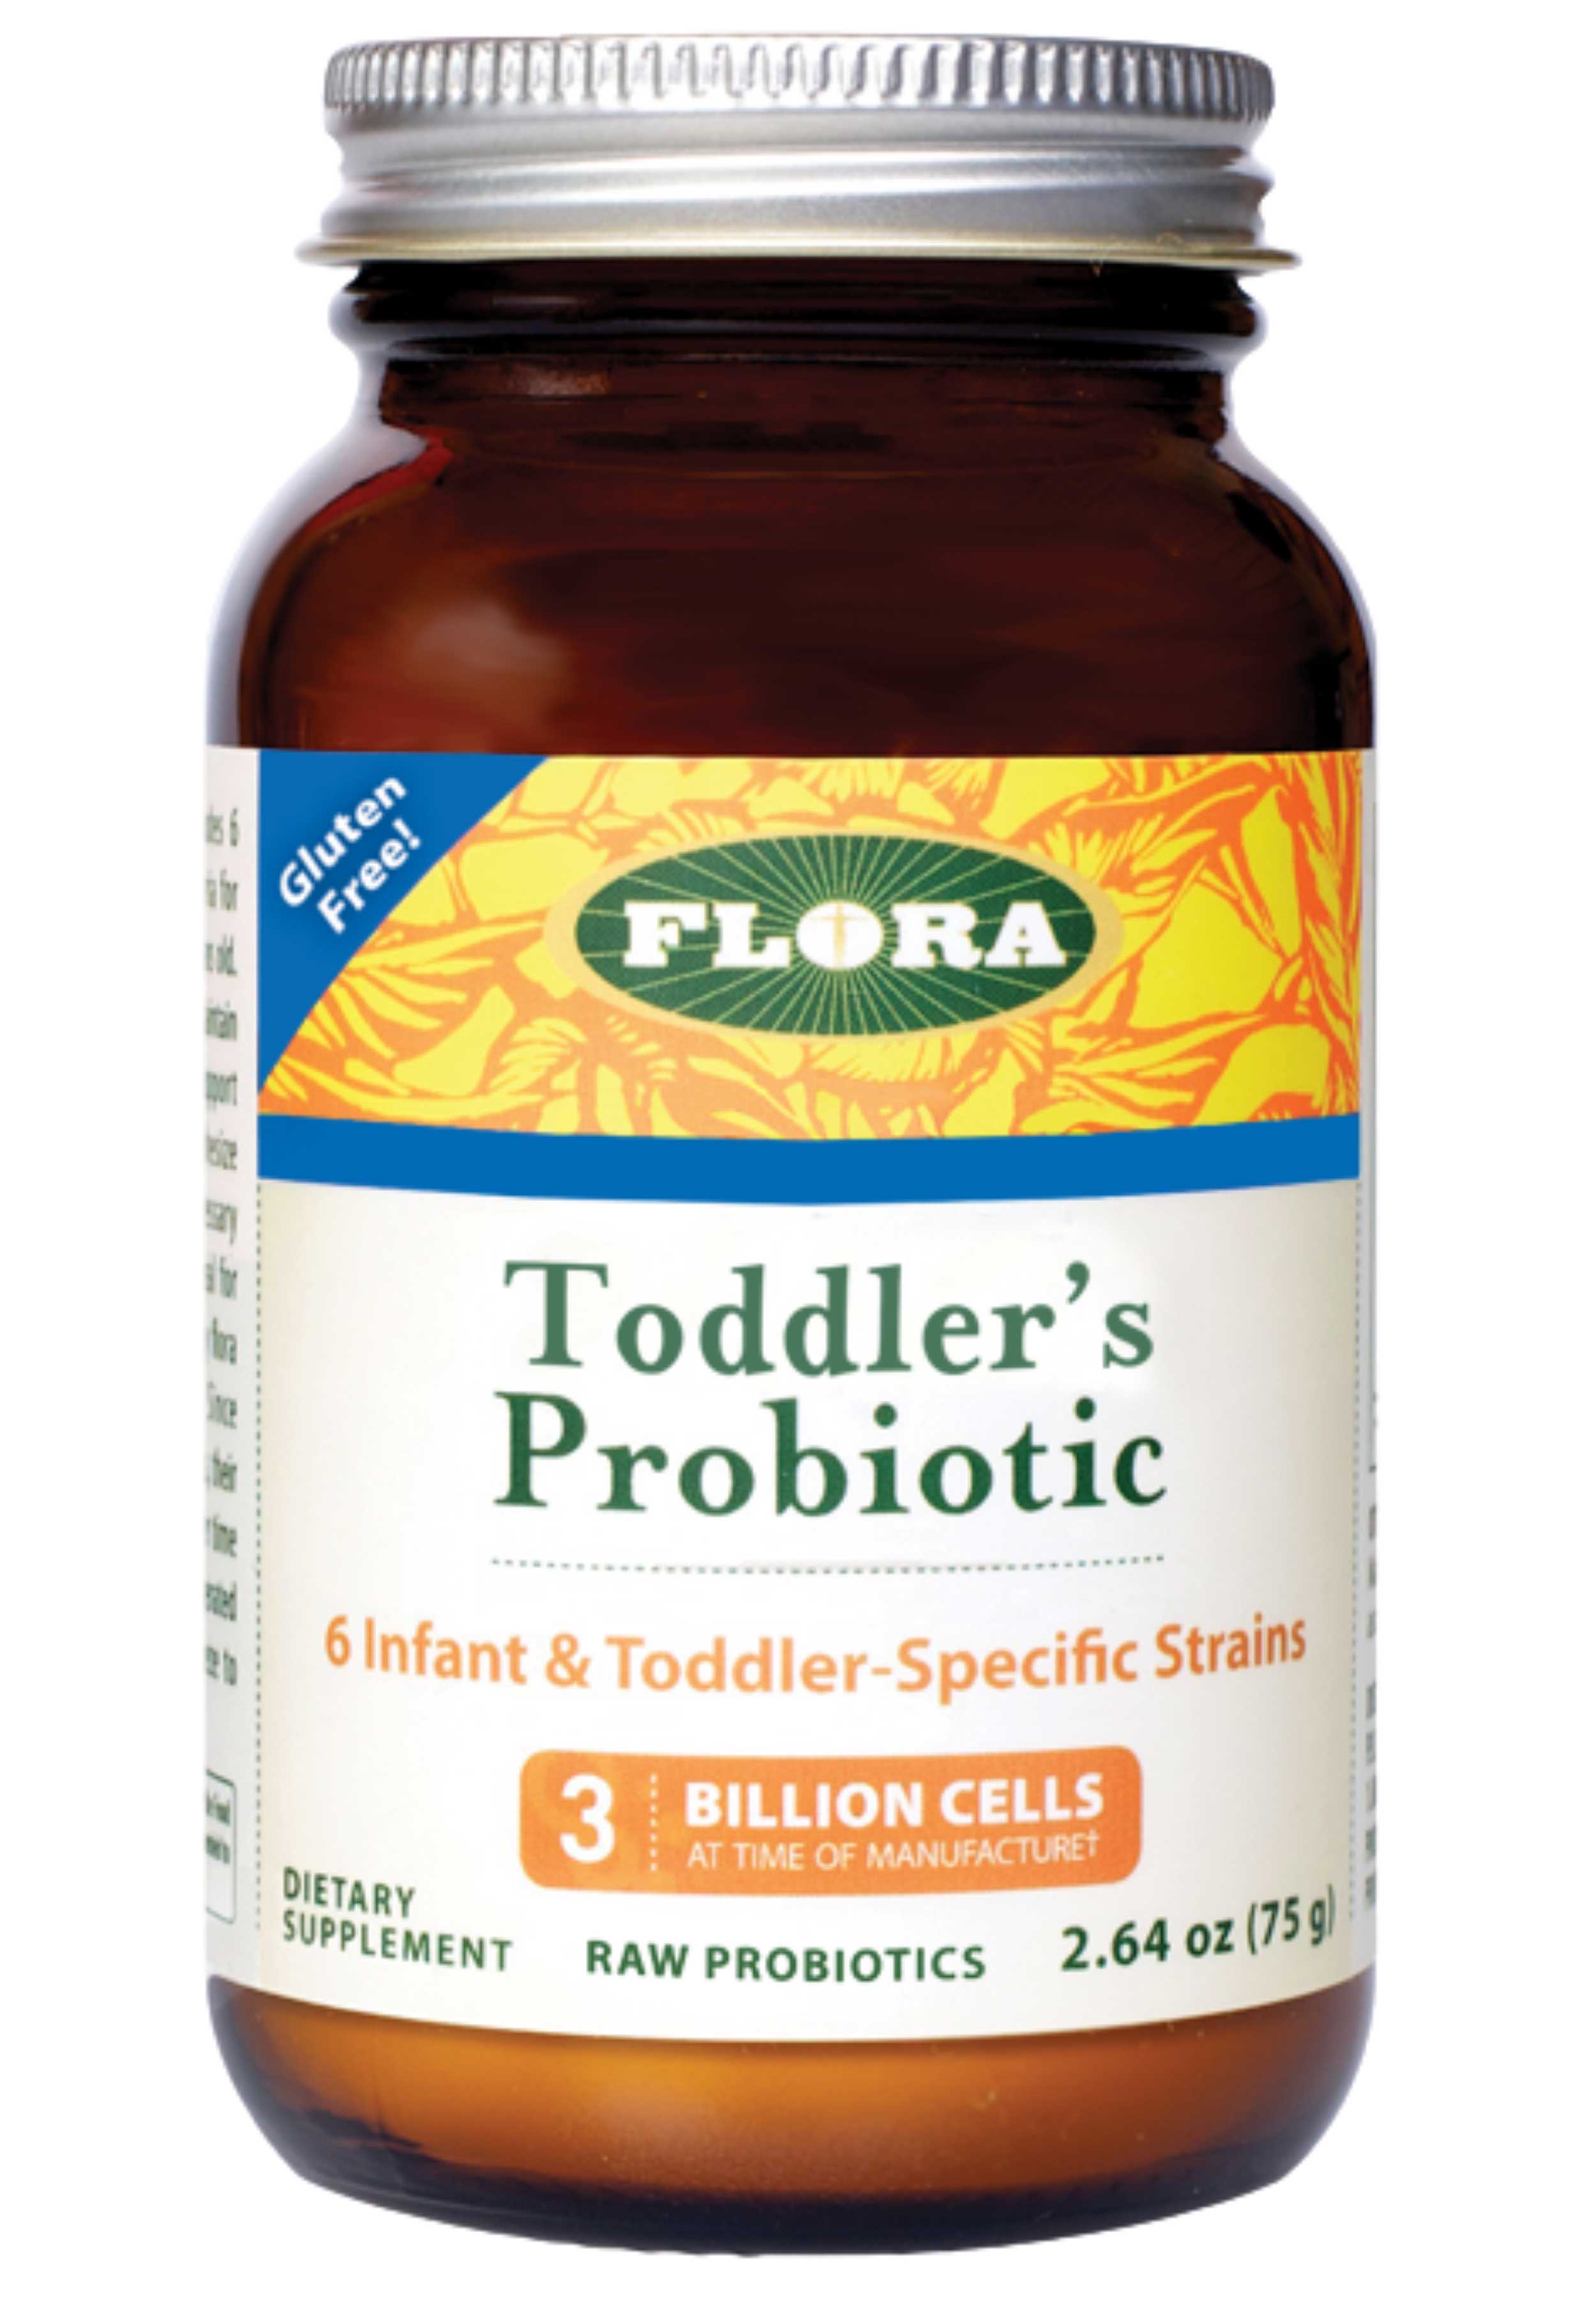 Flora Toddler’s Blend Probiotic